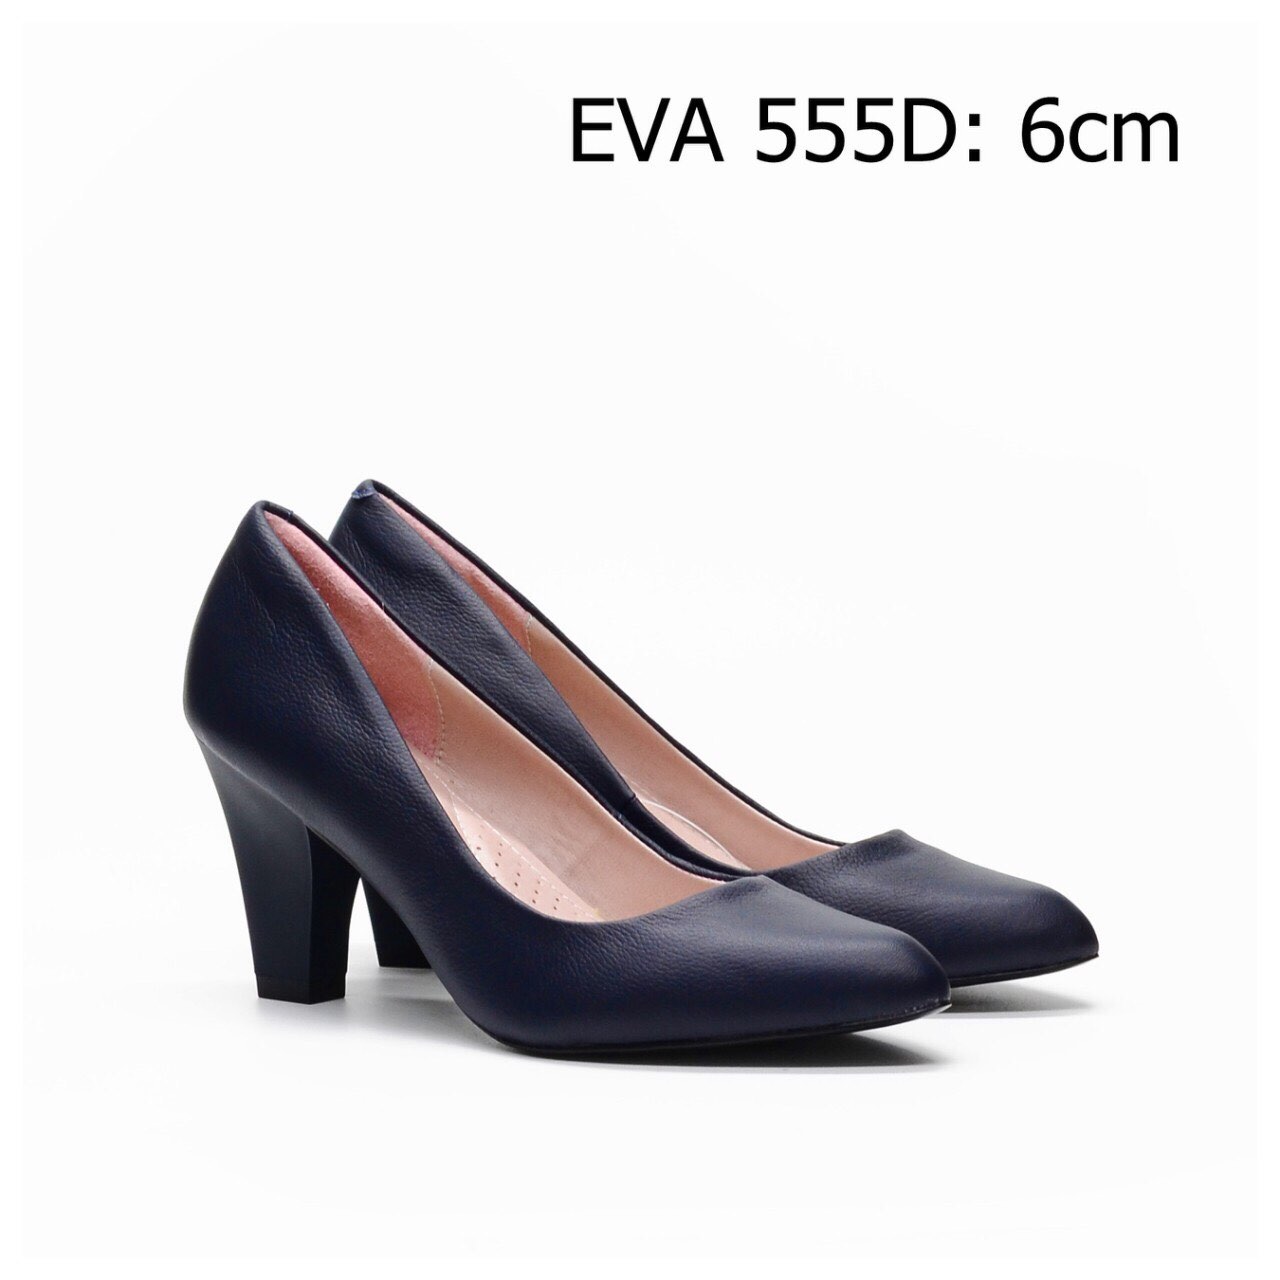 Giày công sở thnh lịch EVA555D thiết kế da bò cao cấp.